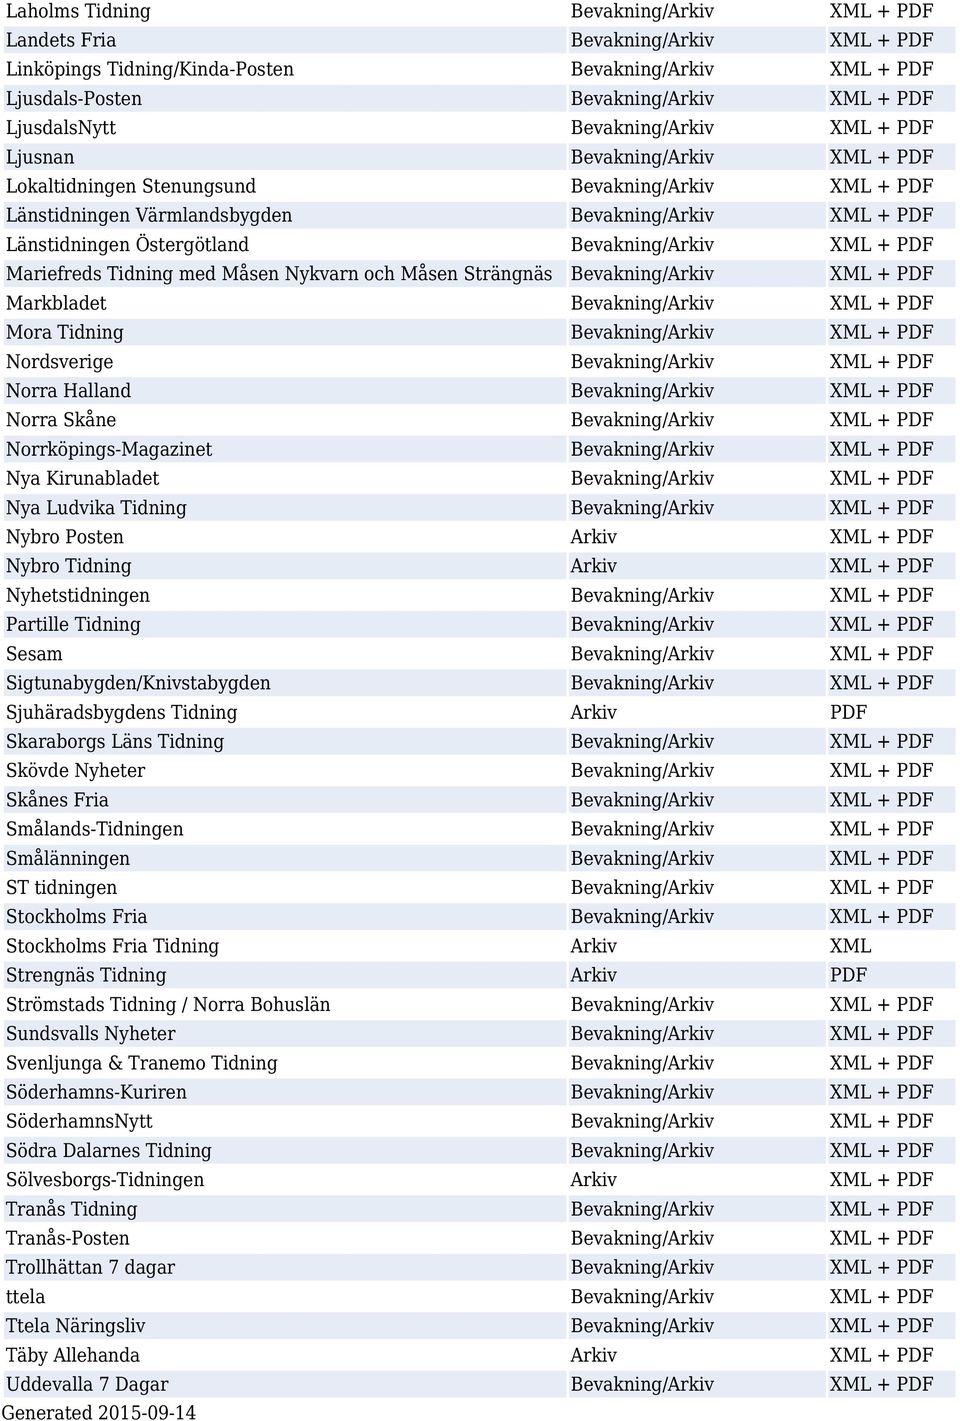 Bevakning/Arkiv XML + PDF Mariefreds Tidning med Måsen Nykvarn och Måsen Strängnäs Bevakning/Arkiv XML + PDF Markbladet Bevakning/Arkiv XML + PDF Mora Tidning Bevakning/Arkiv XML + PDF Nordsverige